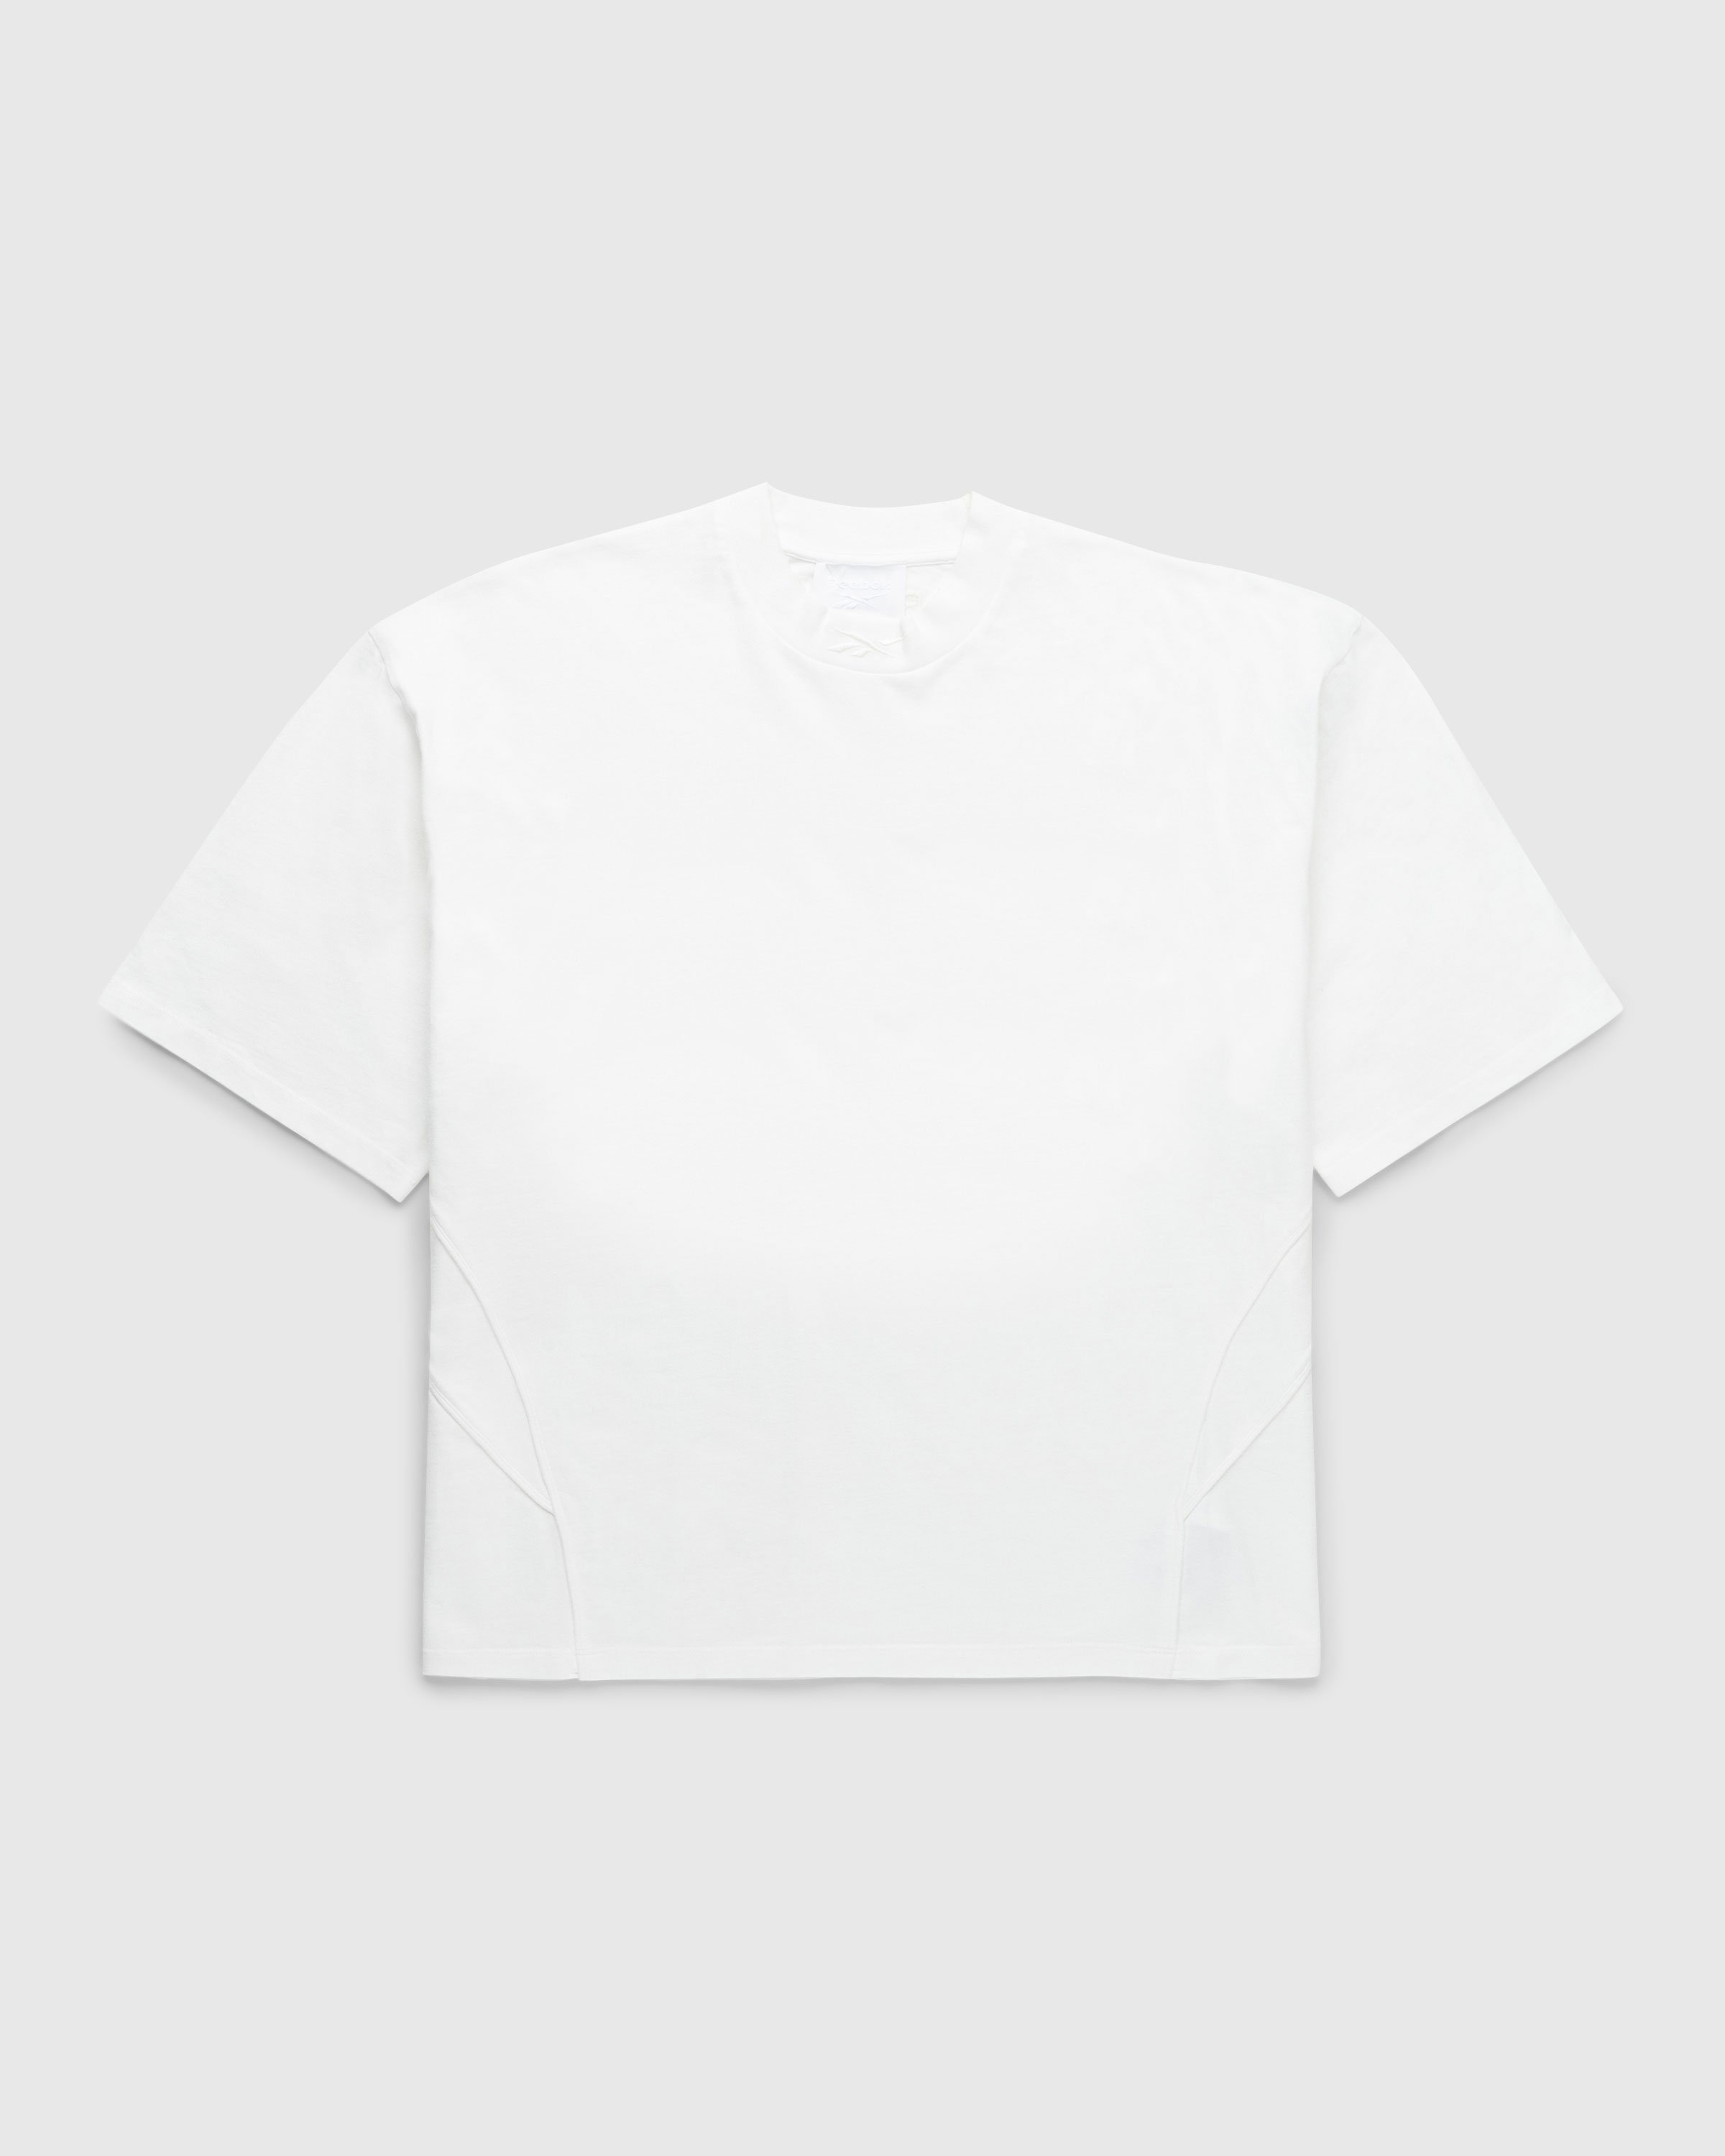 Reebok - Piped T-Shirt Bones - Clothing - White - Image 1